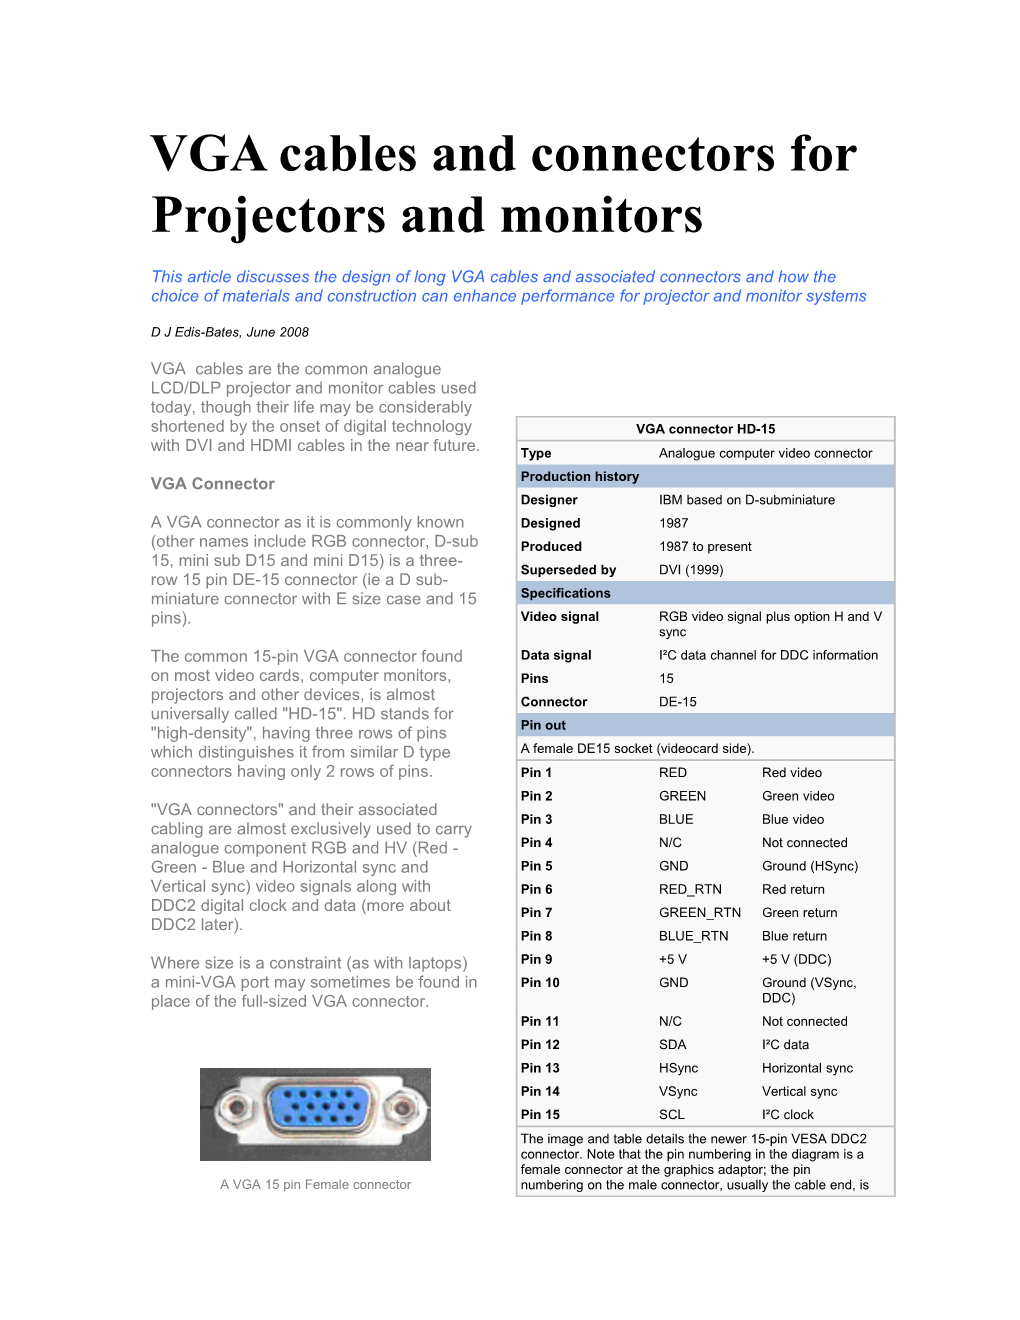 VGA Cables and Connectors for Projectors and Monitors